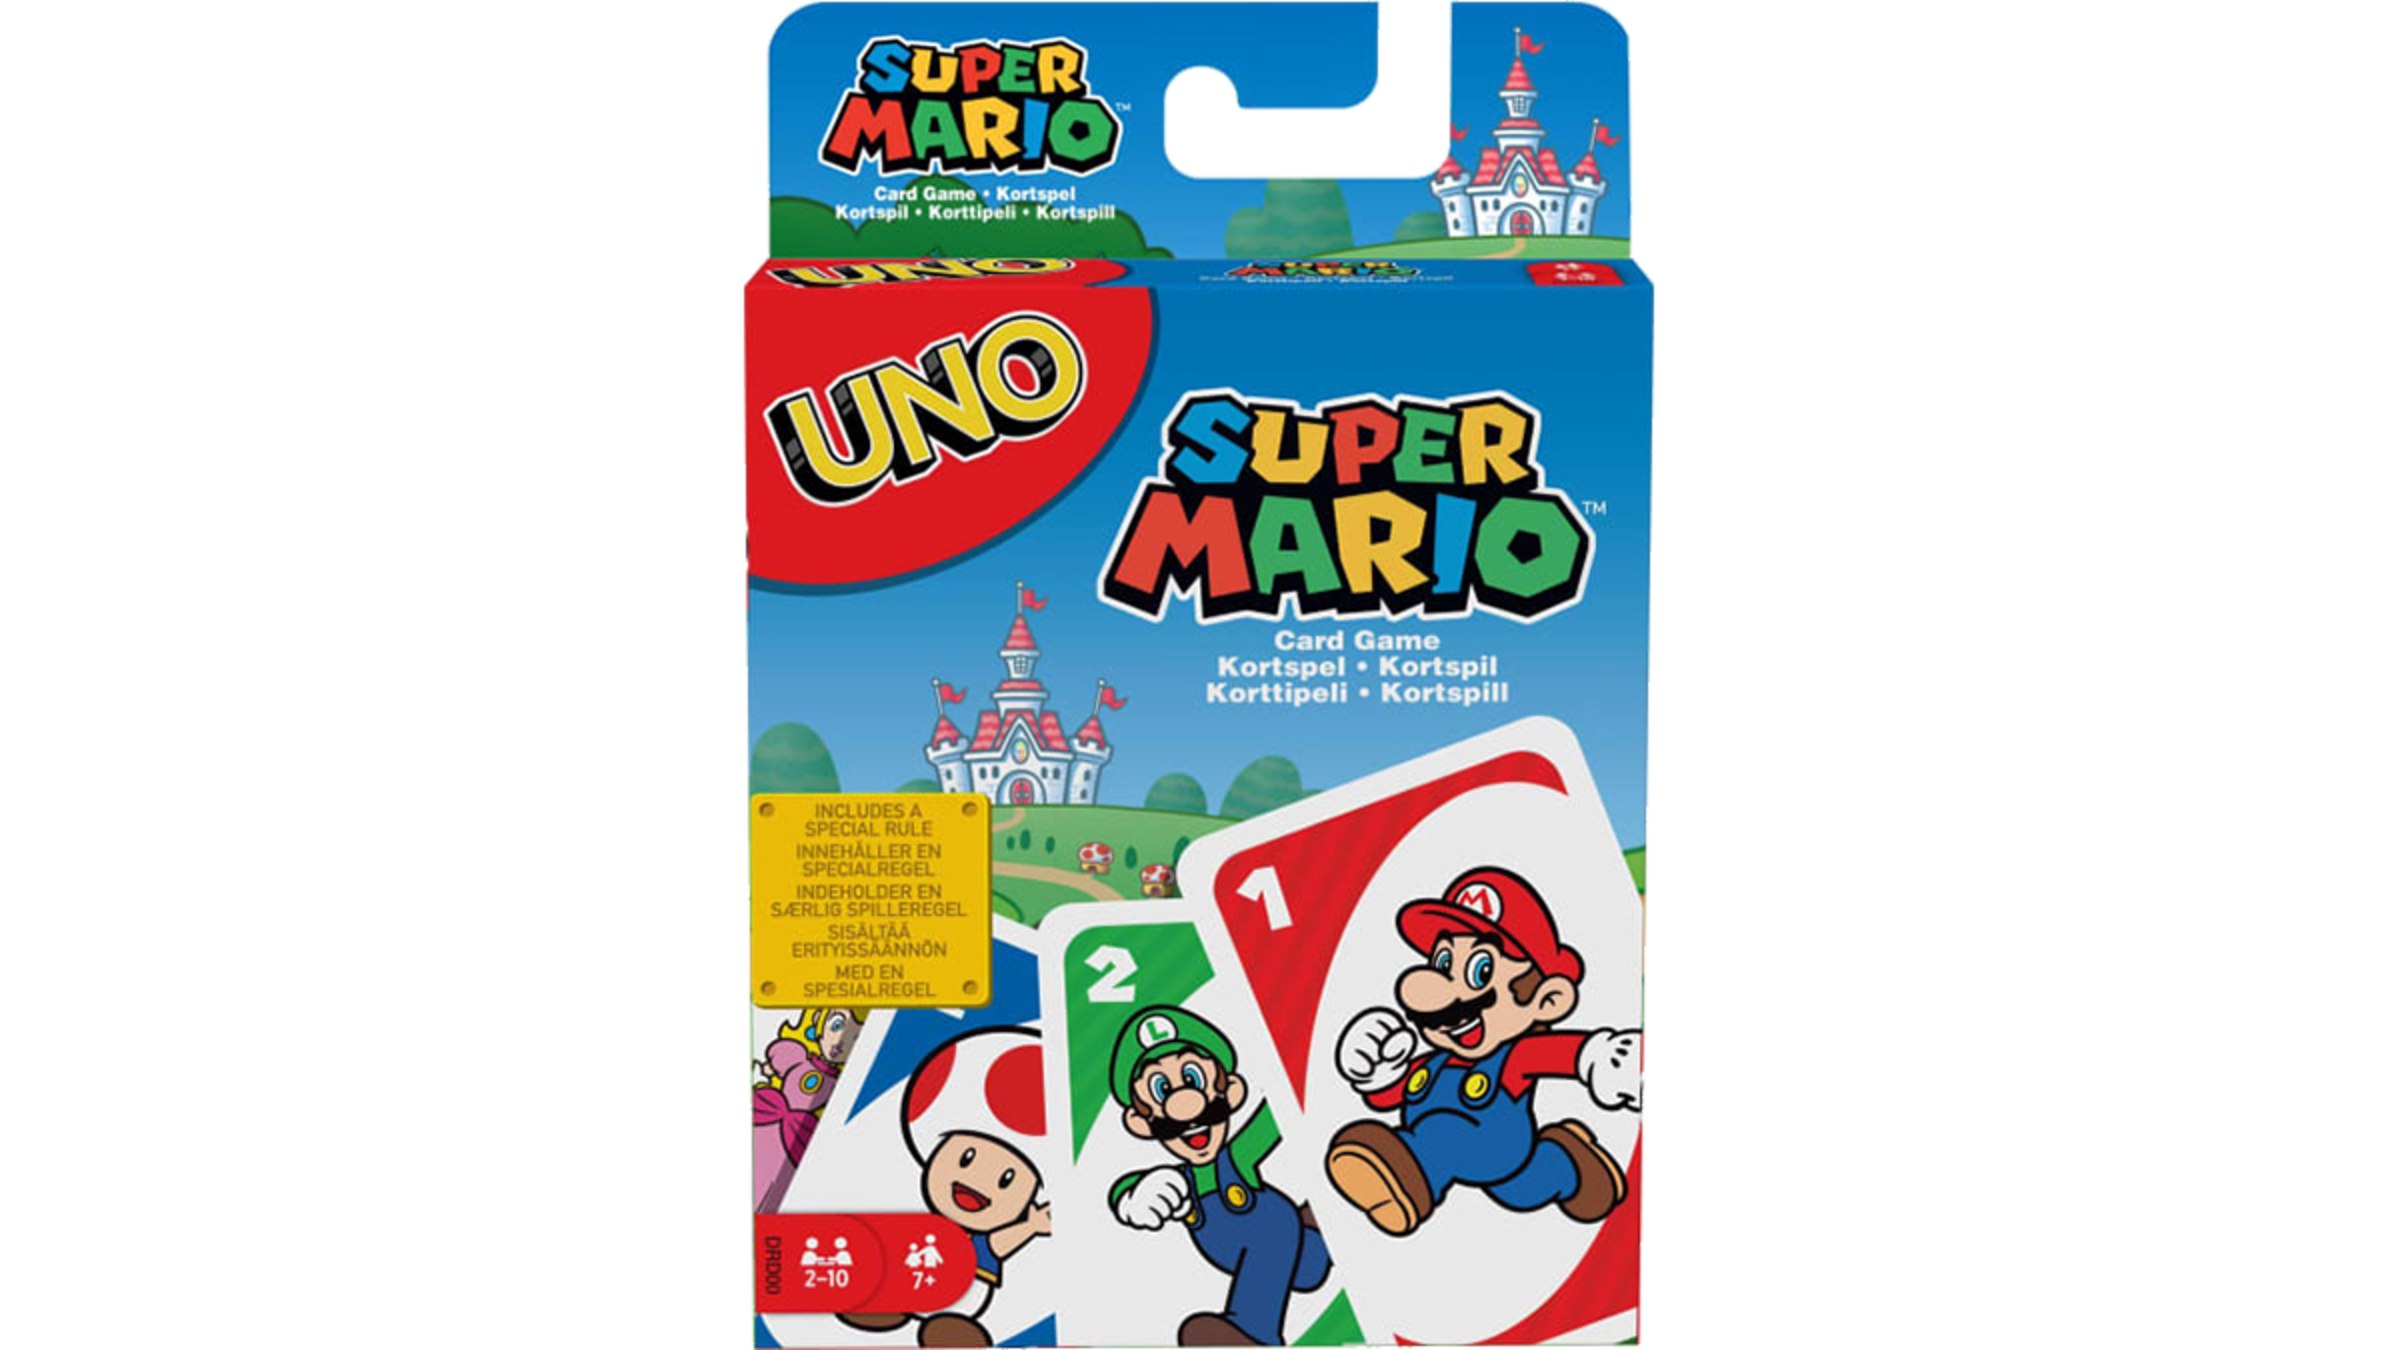 Unblocked Games - Uno